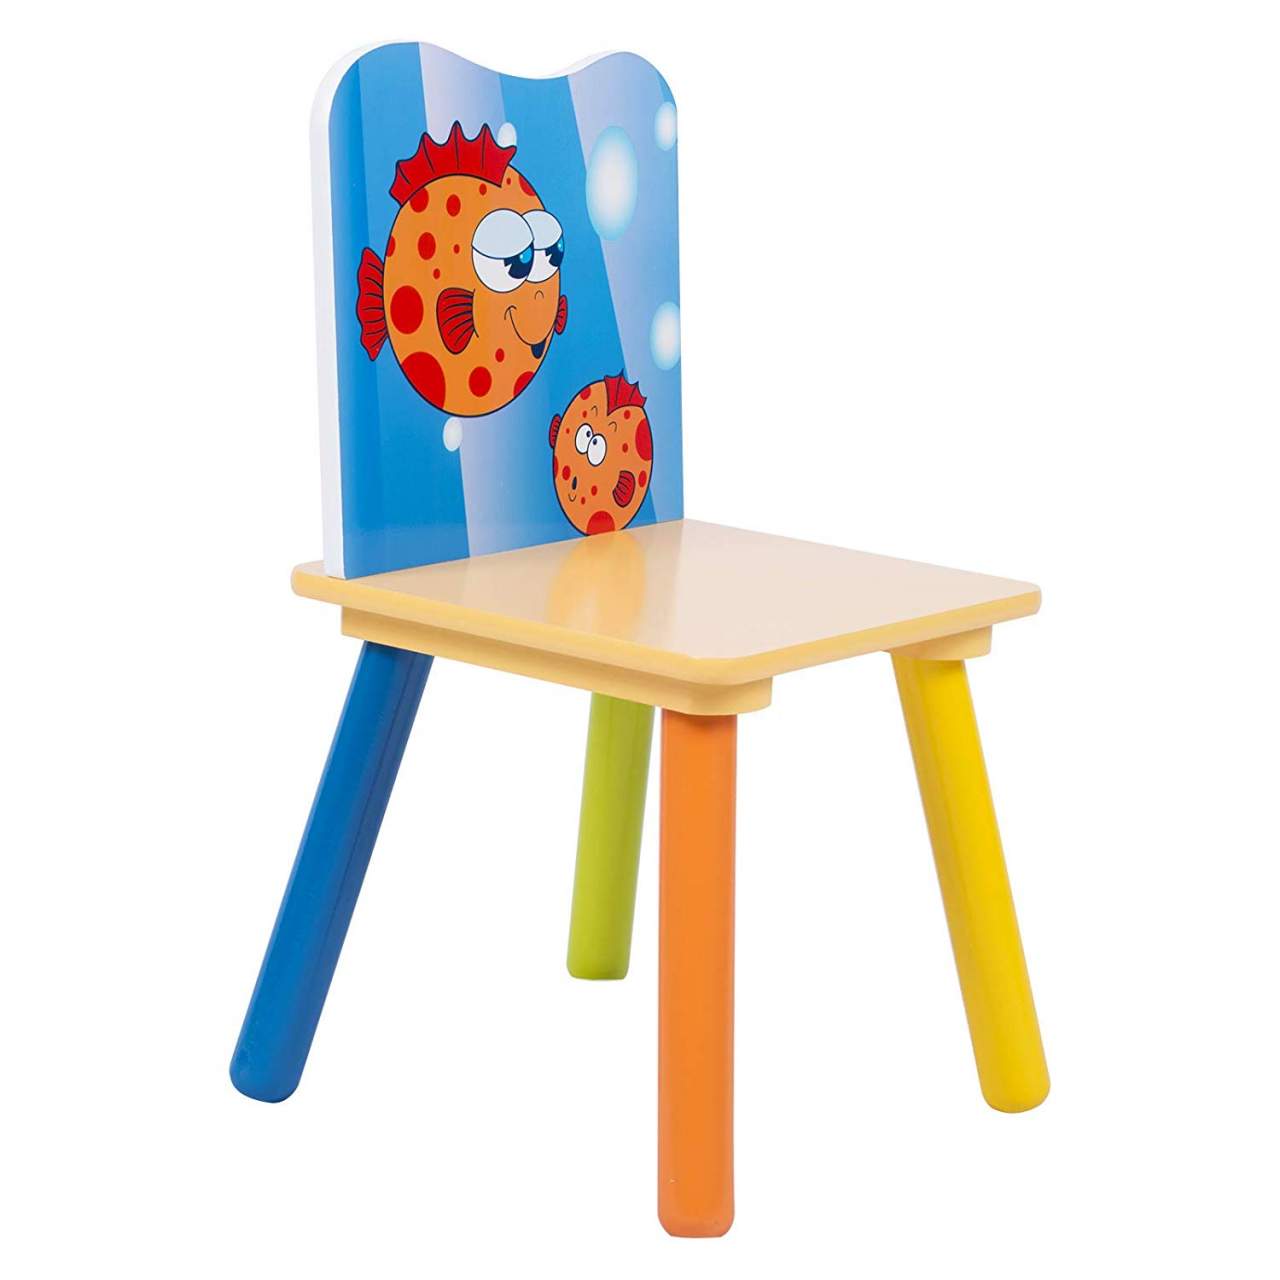 Kindersitzgruppe Kindertisch mit 2 Stühlen Kindertisch Kinderstuhl Set  #930-24 